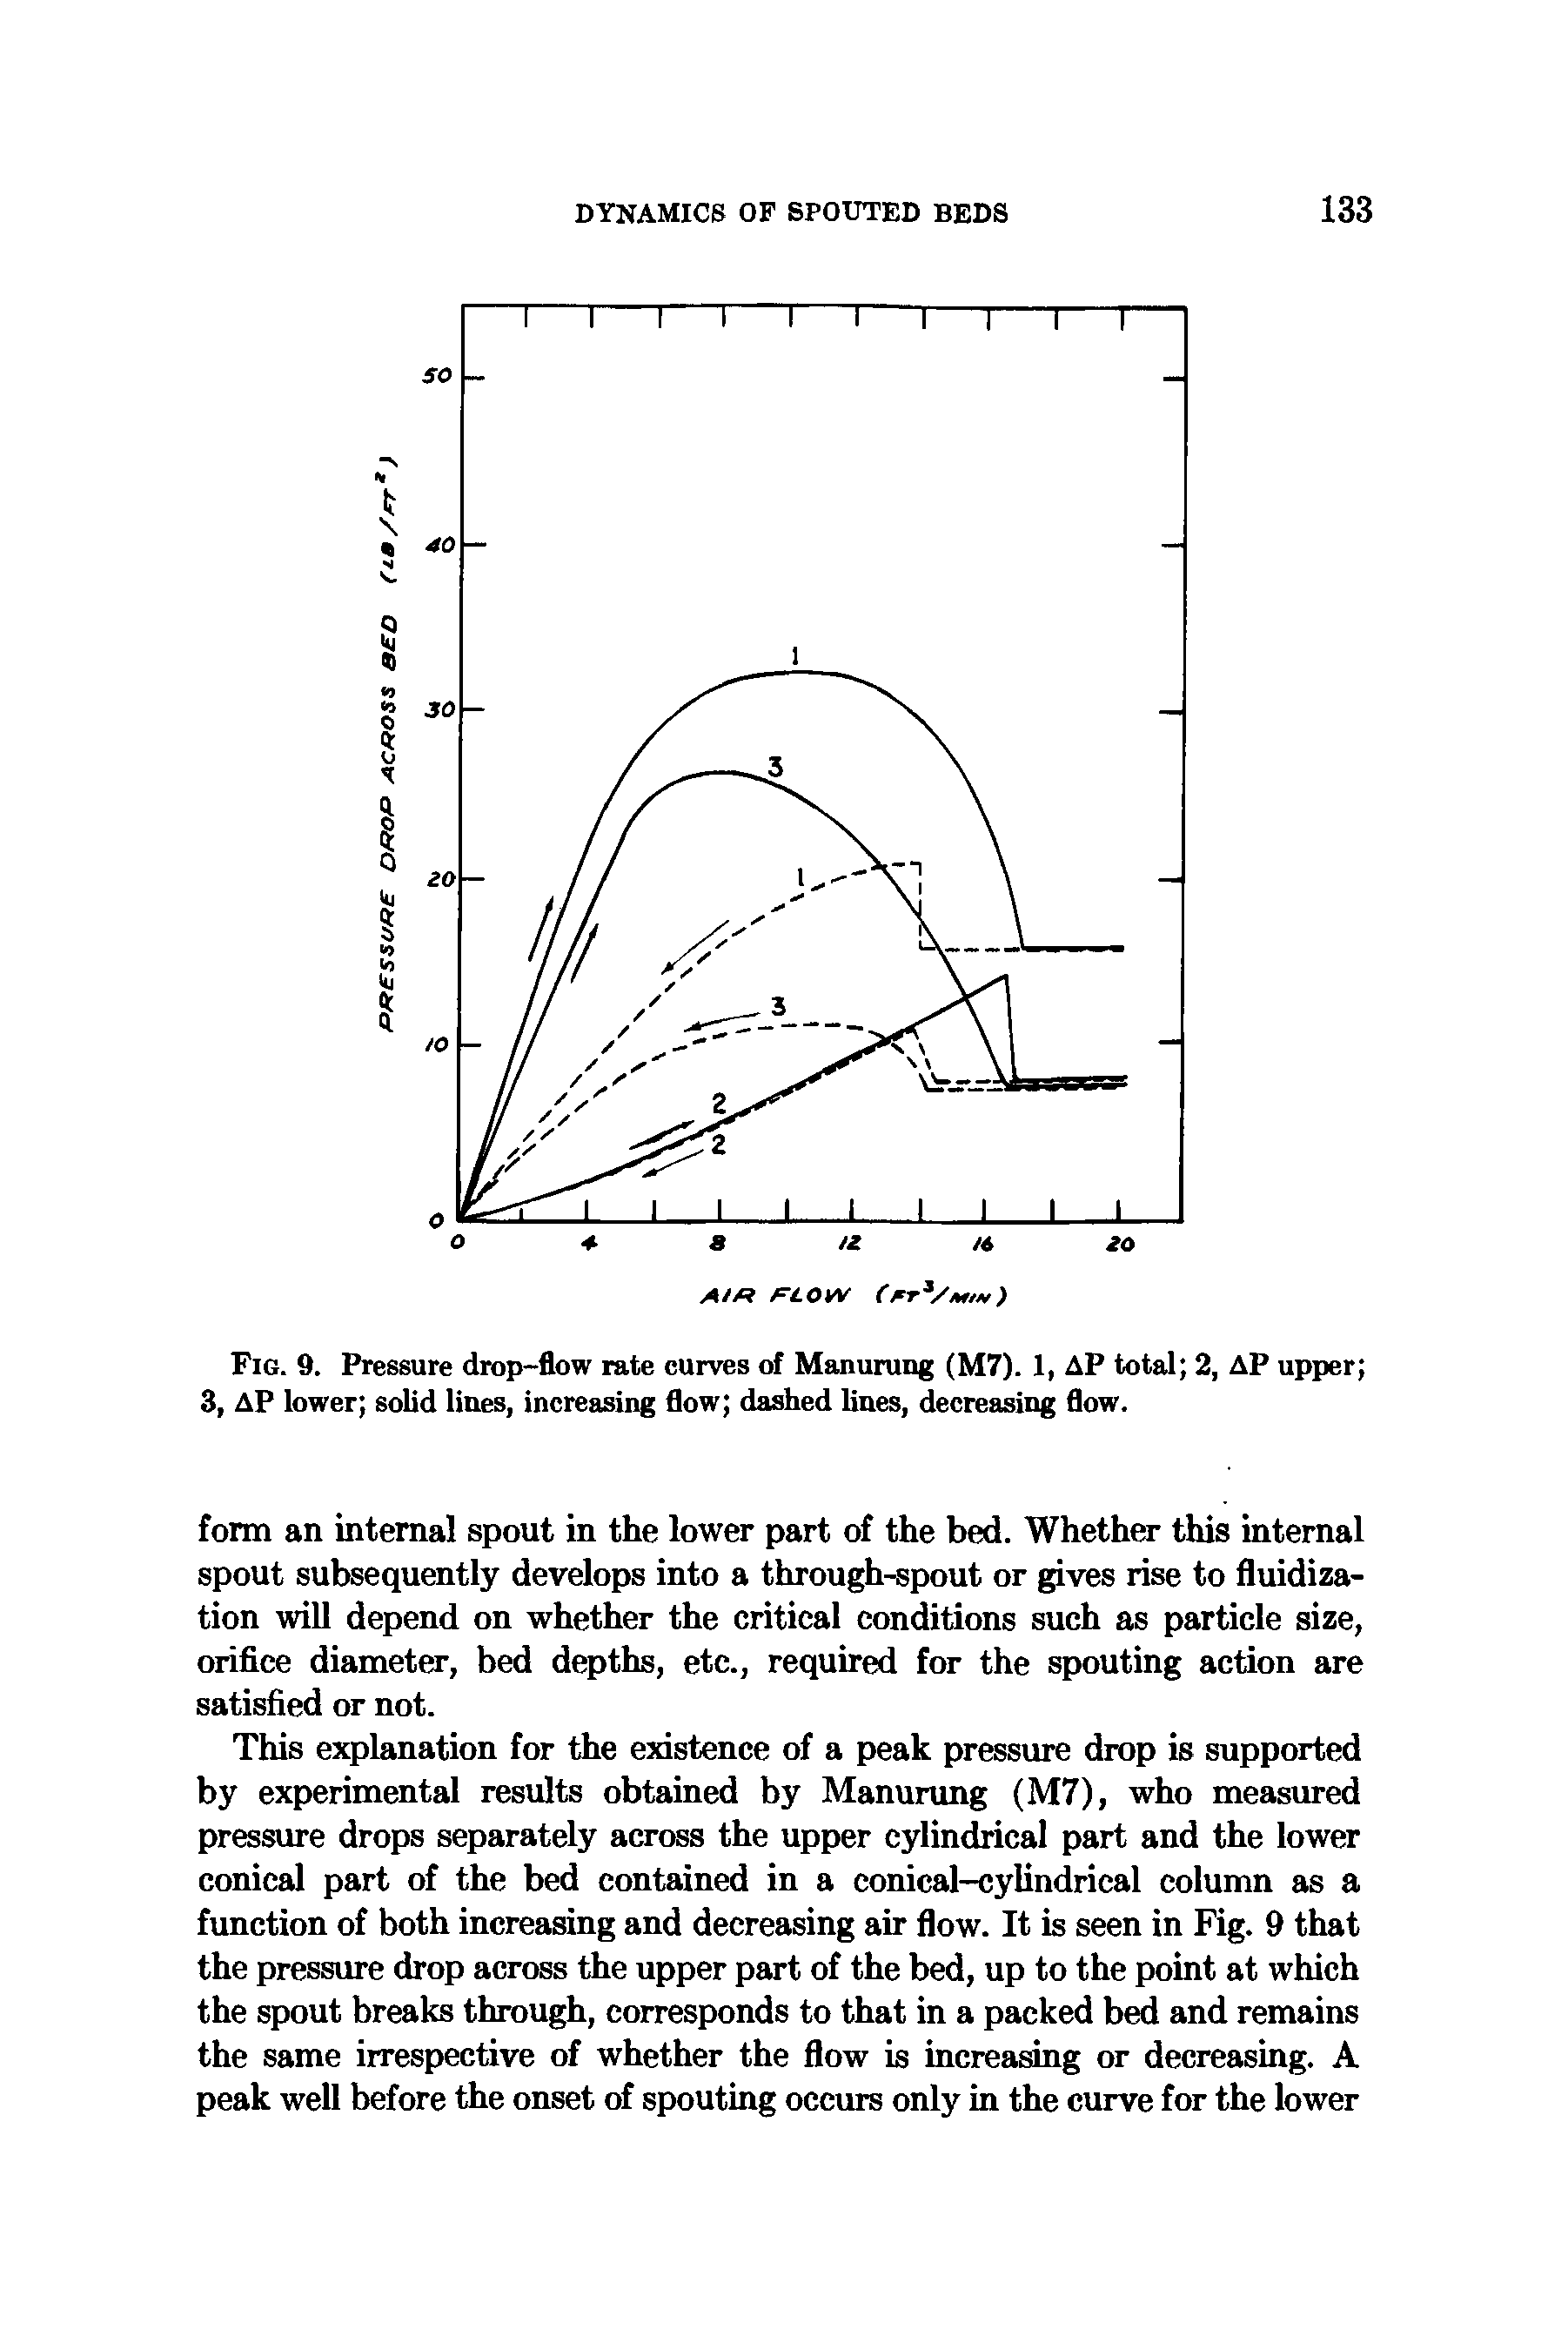 Fig. 9. Pressure drop-flow rate curves of Manurung (M7). 1, AP total 2, AP upper 3, AP lower solid lines, increasing flow dashed lines, decreasing flow.